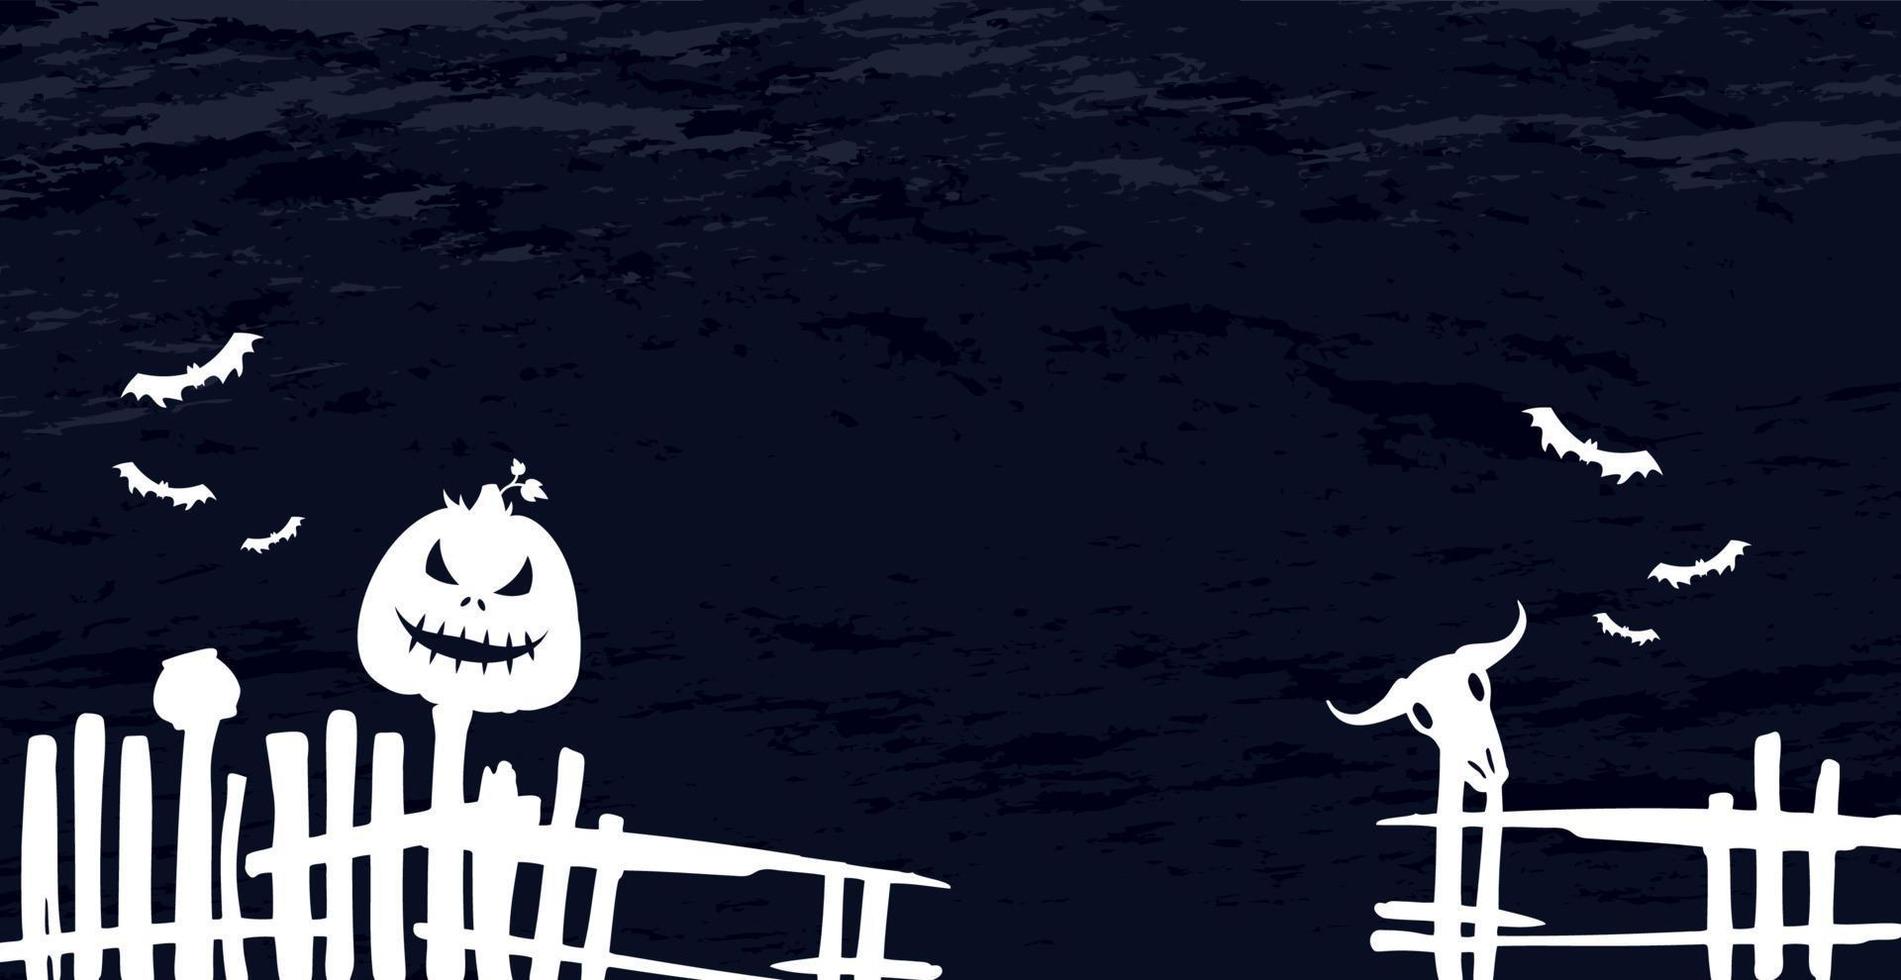 beängstigend düster dunkelblau Halloween Hintergrund - Vektor